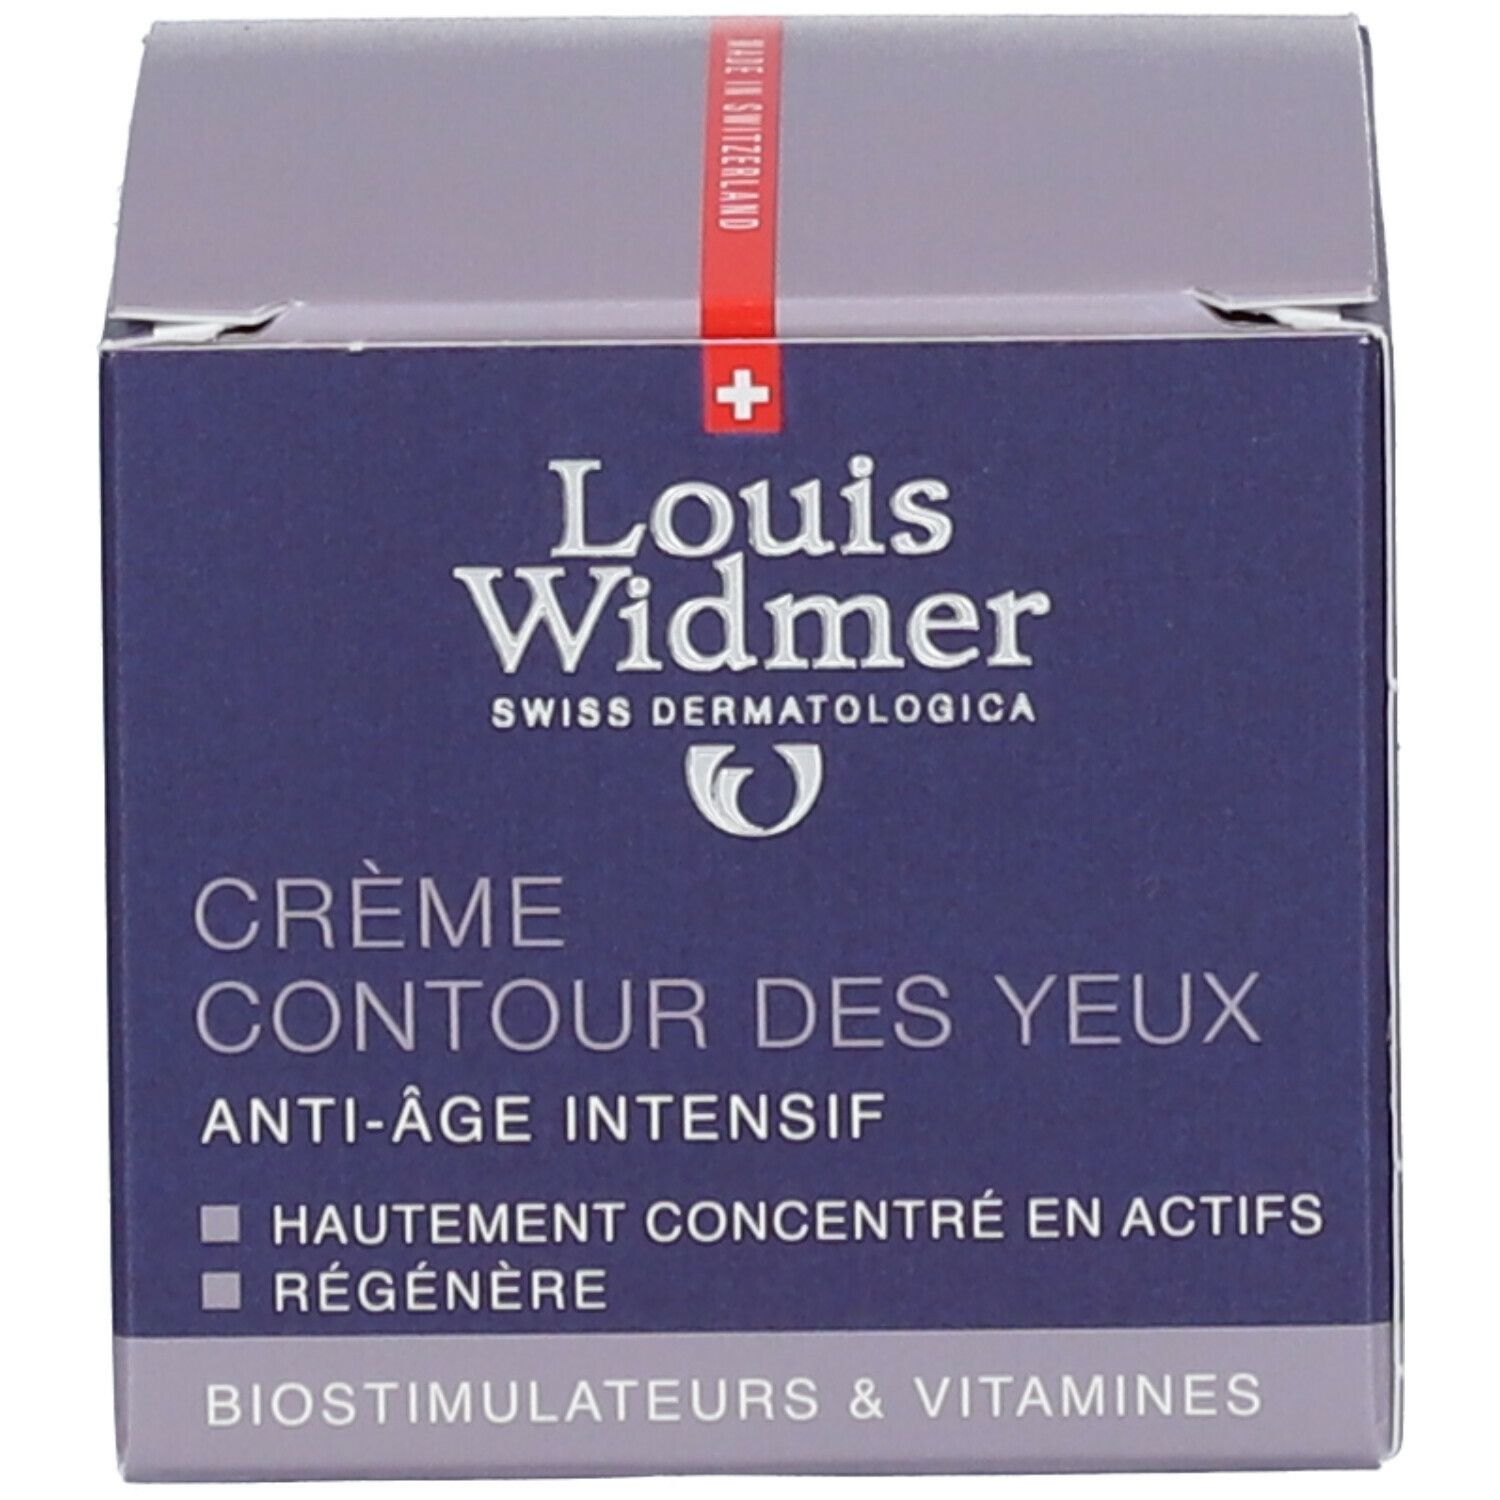 Louis Widmer Creme für die Augenpartie leicht parfümiert